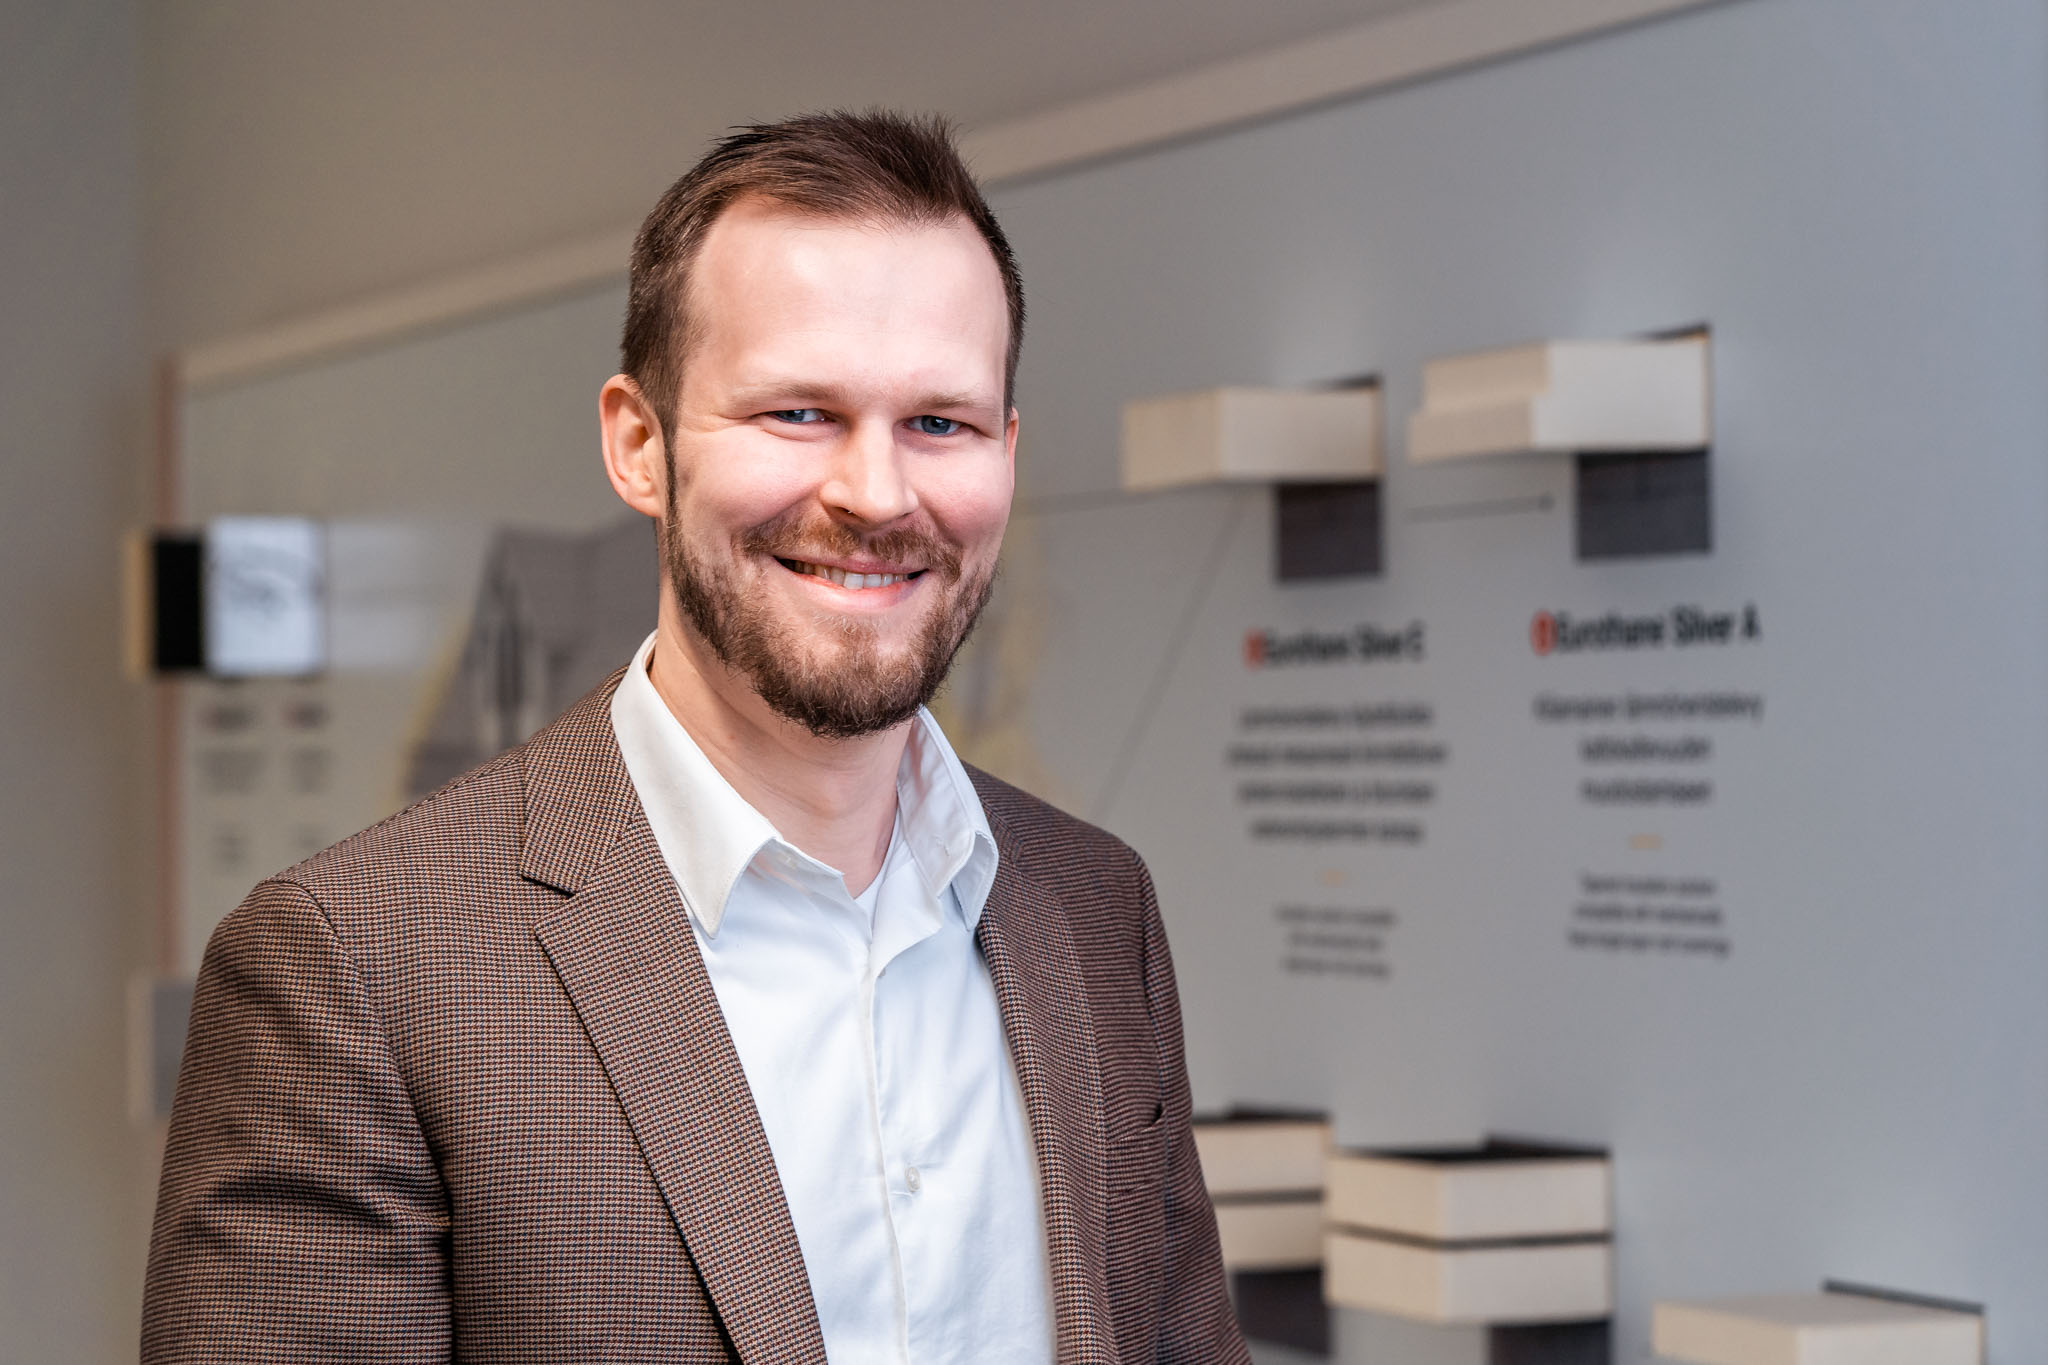 Webinaarin asiantuntijana Antti Viitanen, joka toimii Recticel Insulation Oy:llä Specification Managerina.